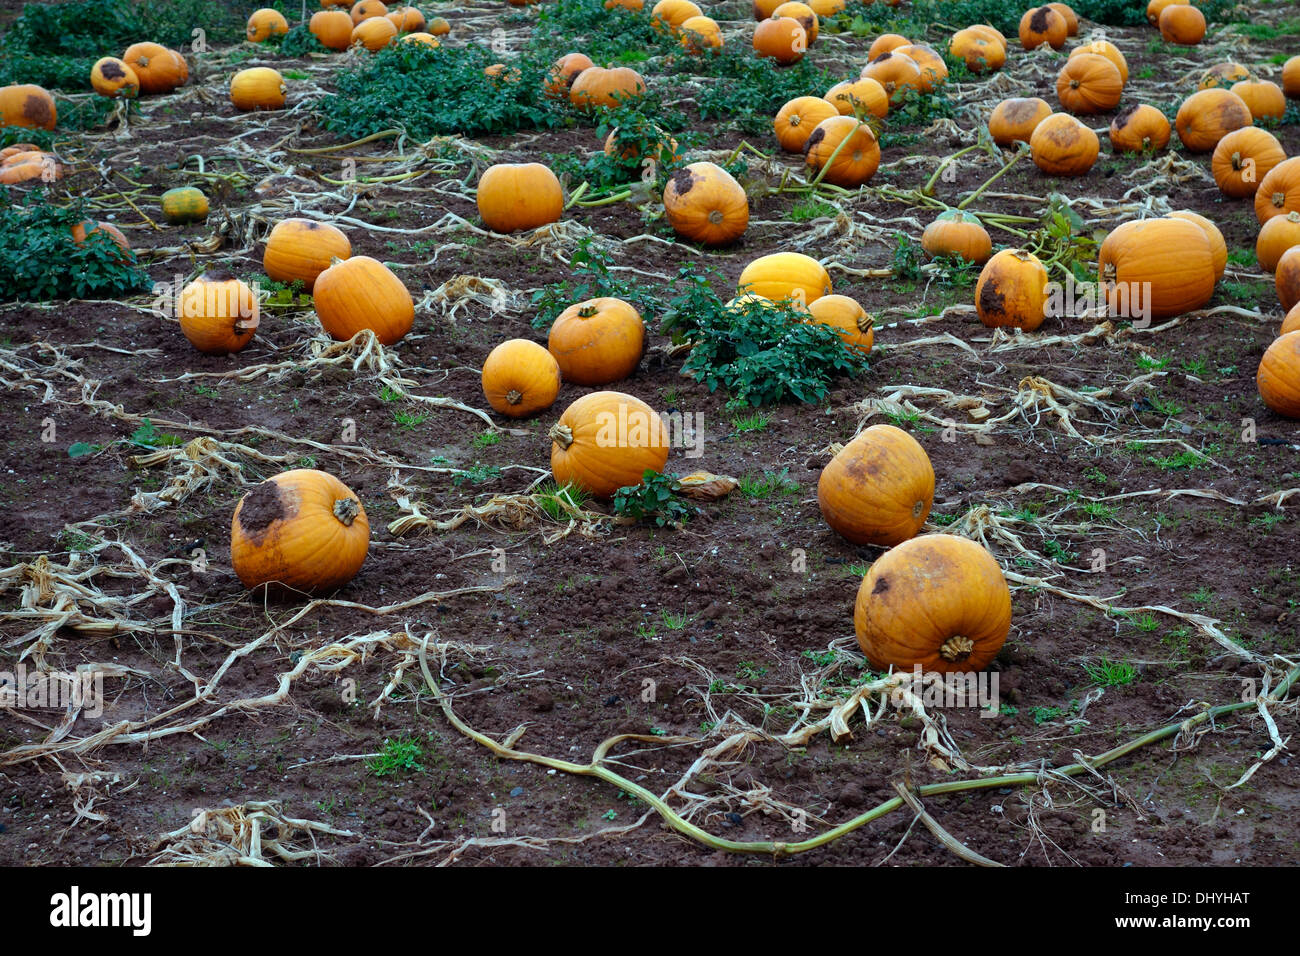 A field of Cucurbita maxima - Pumpkins in November, Devon UK Stock Photo